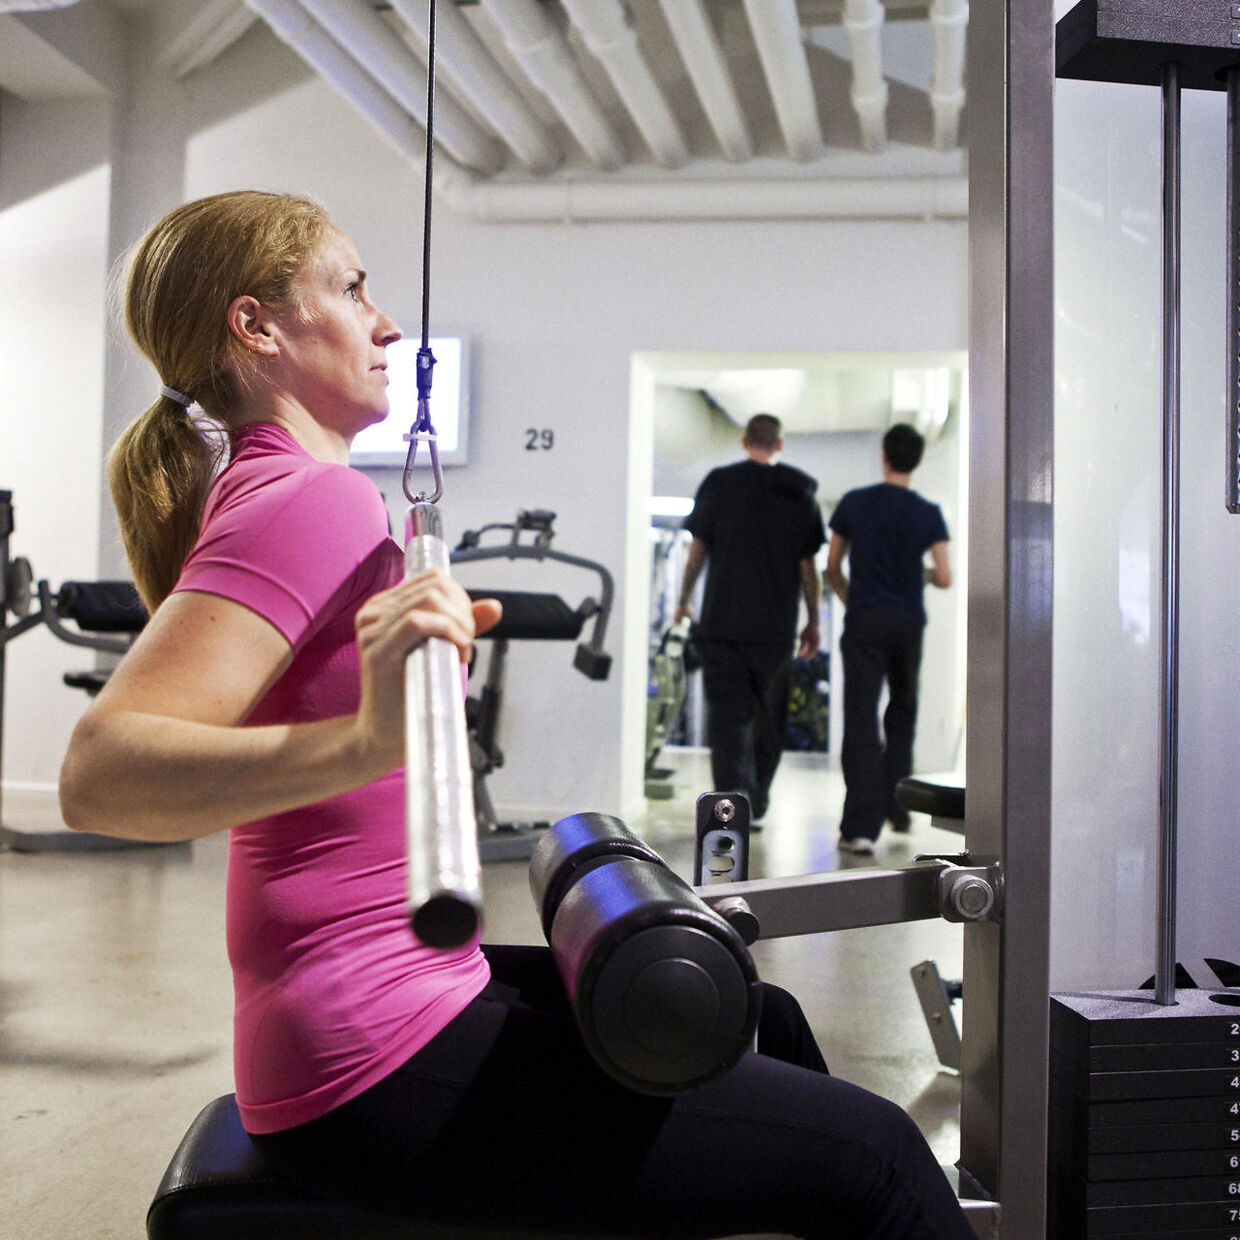 Anna Vagner, personlig træner, viser, hvordan man skal bruge fitnessmaskinerne i træningscenteret korrekt. 3. øvelse - forkert rygholdning